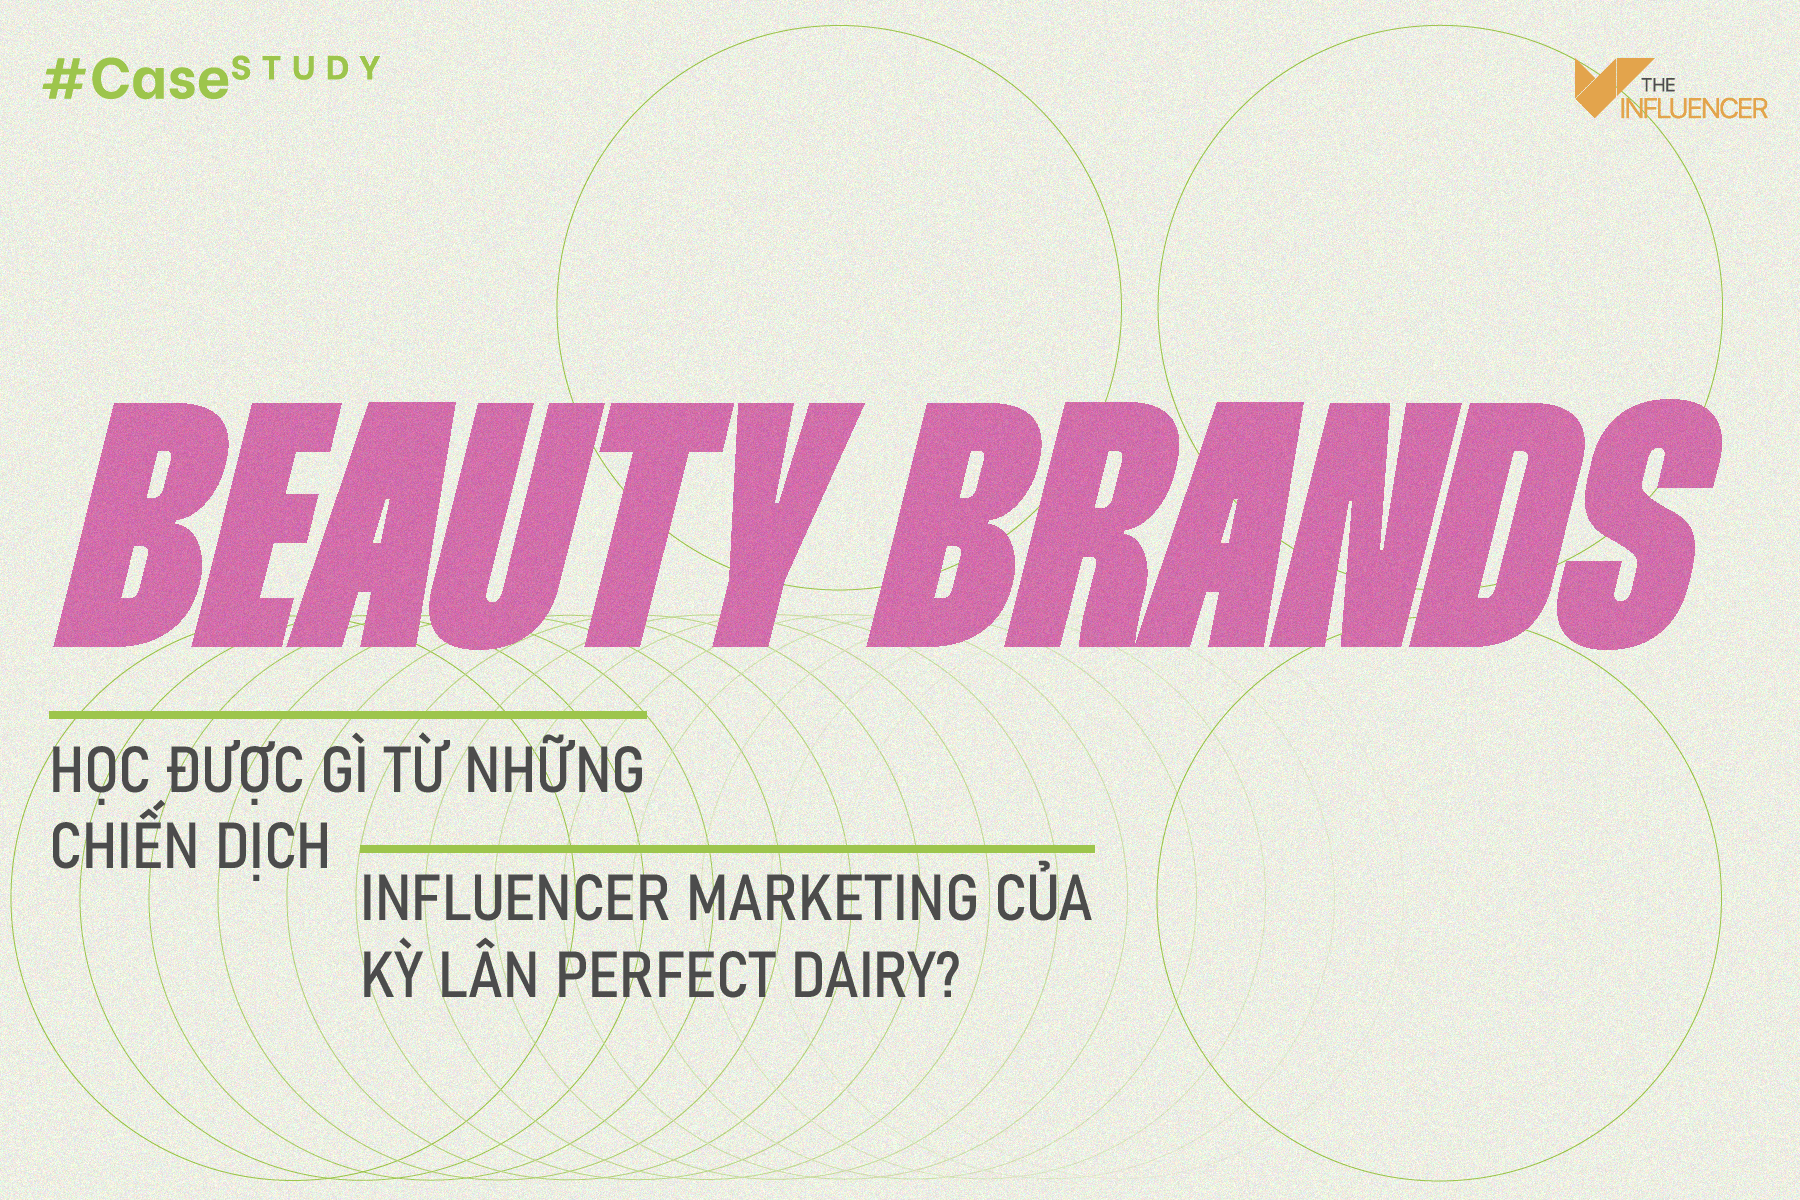 #Casestudy: Beauty brands học được gì từ những chiến dịch influencer marketing của kỳ lân Perfect Dairy?